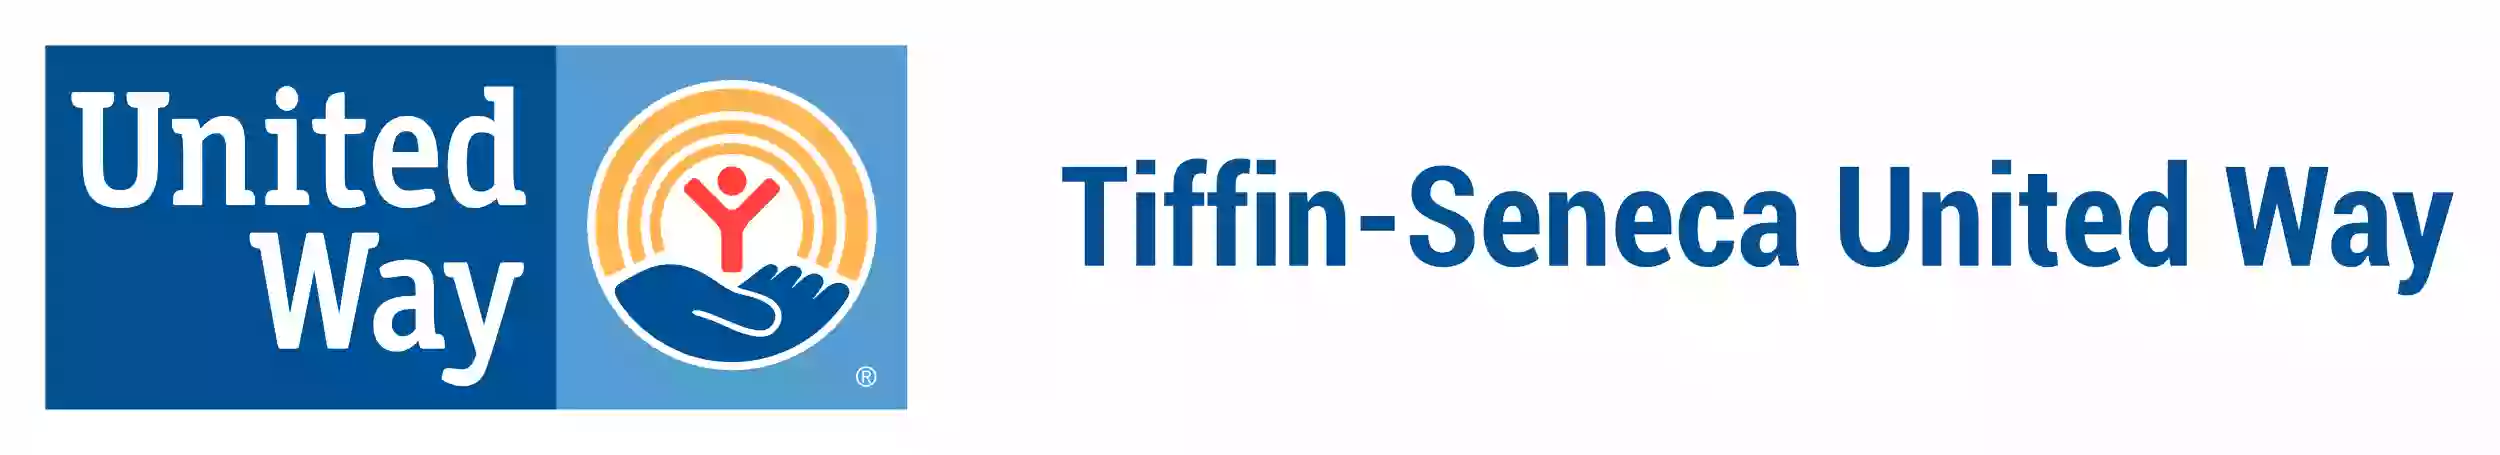 Tiffin-Seneca United Way